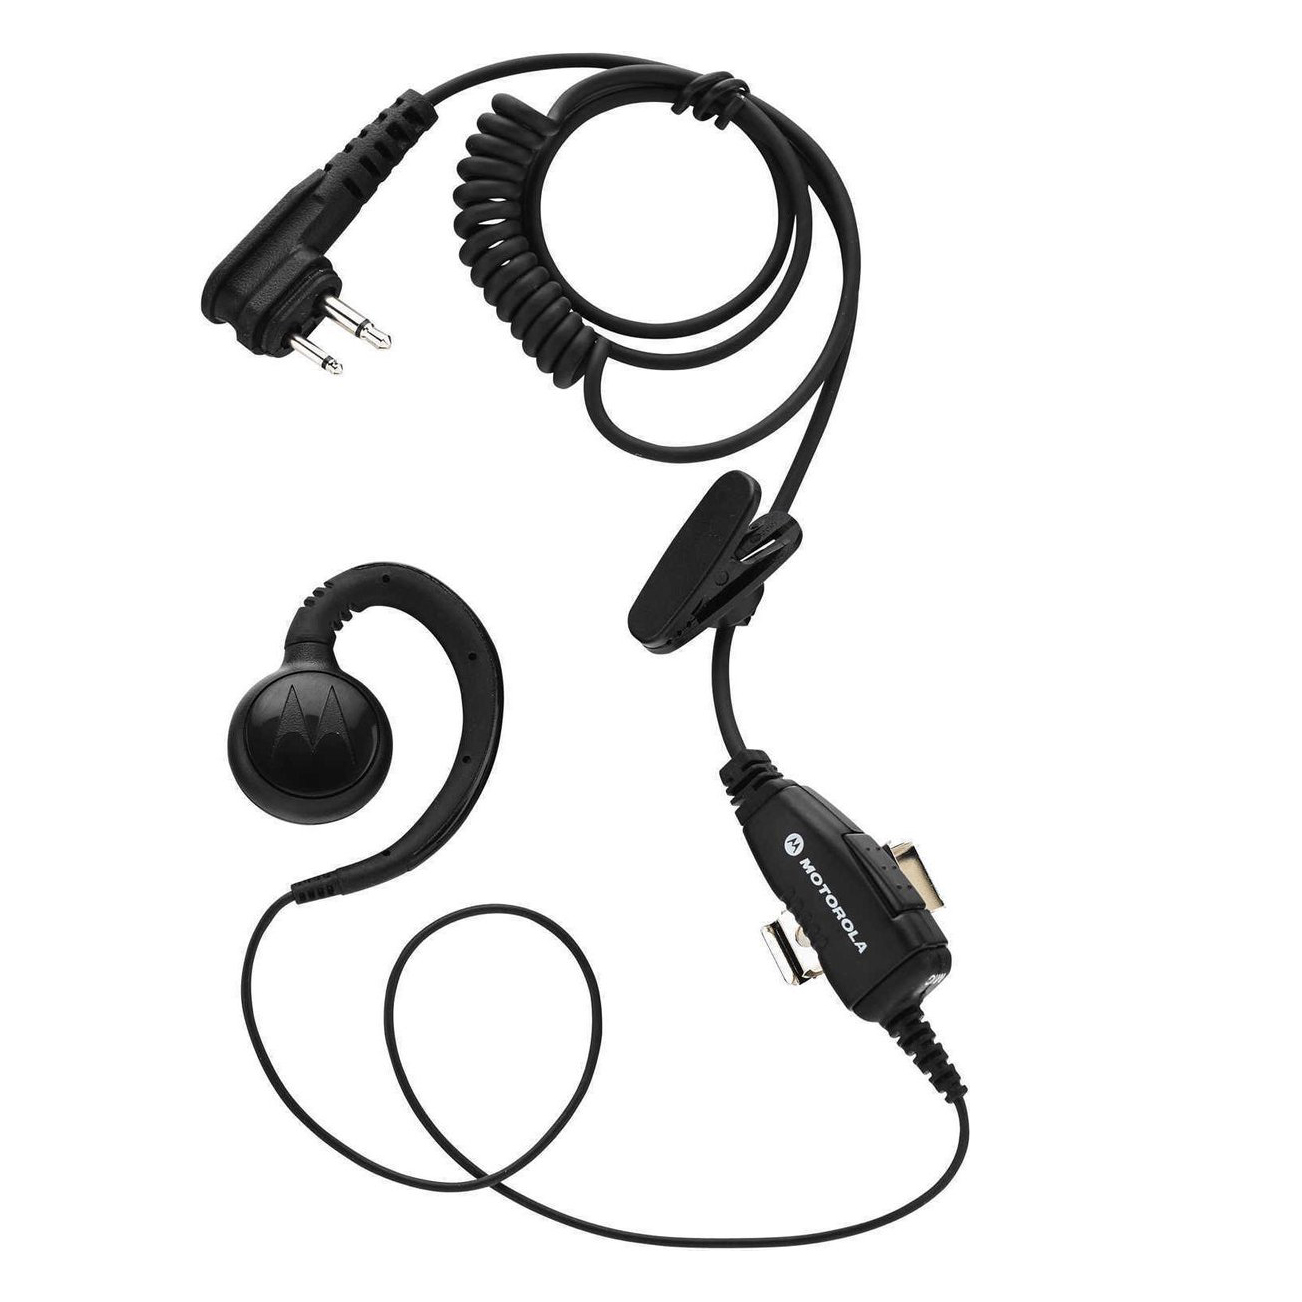 MO-HKLN4604A Swivel earpiece for the Motorola XT400 walkie-talkie series.